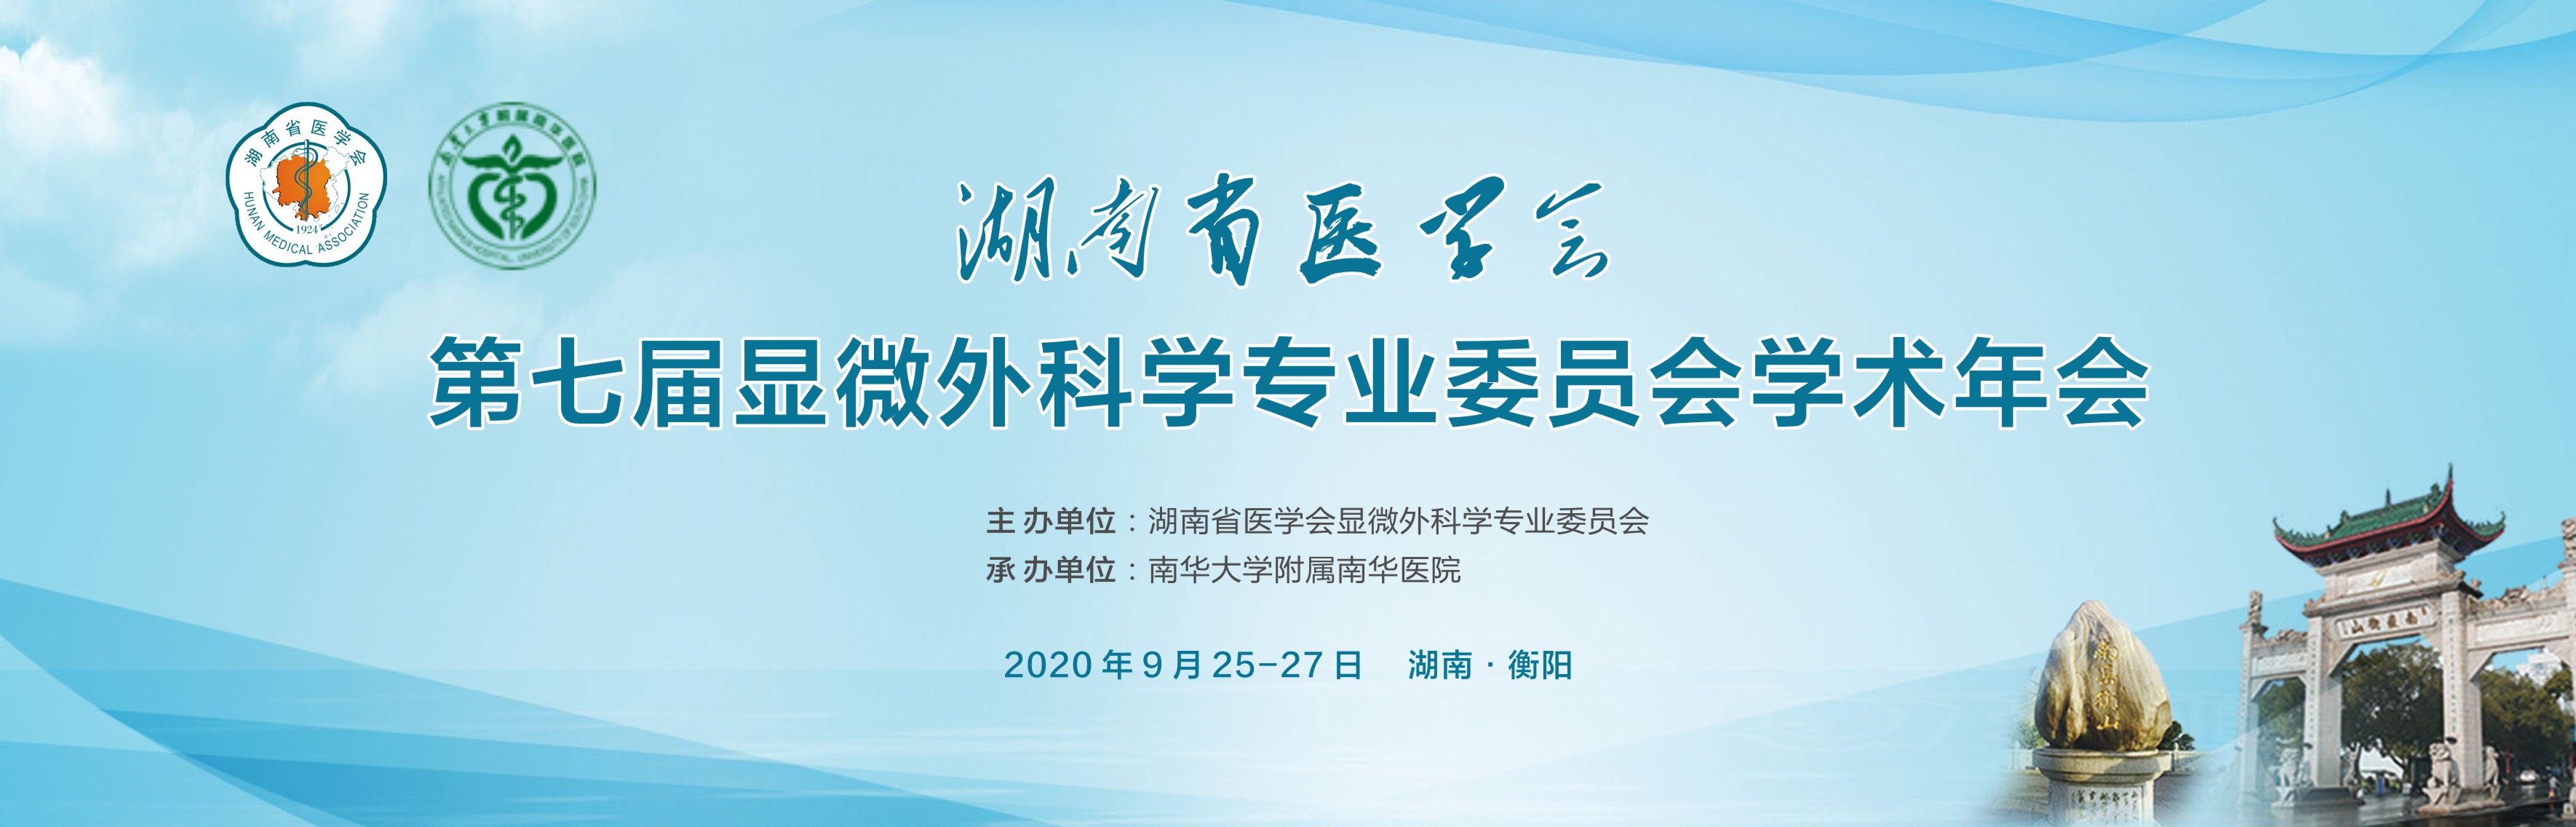 湖南省医学会第七届显微外科学专业委员会学术年年会会议